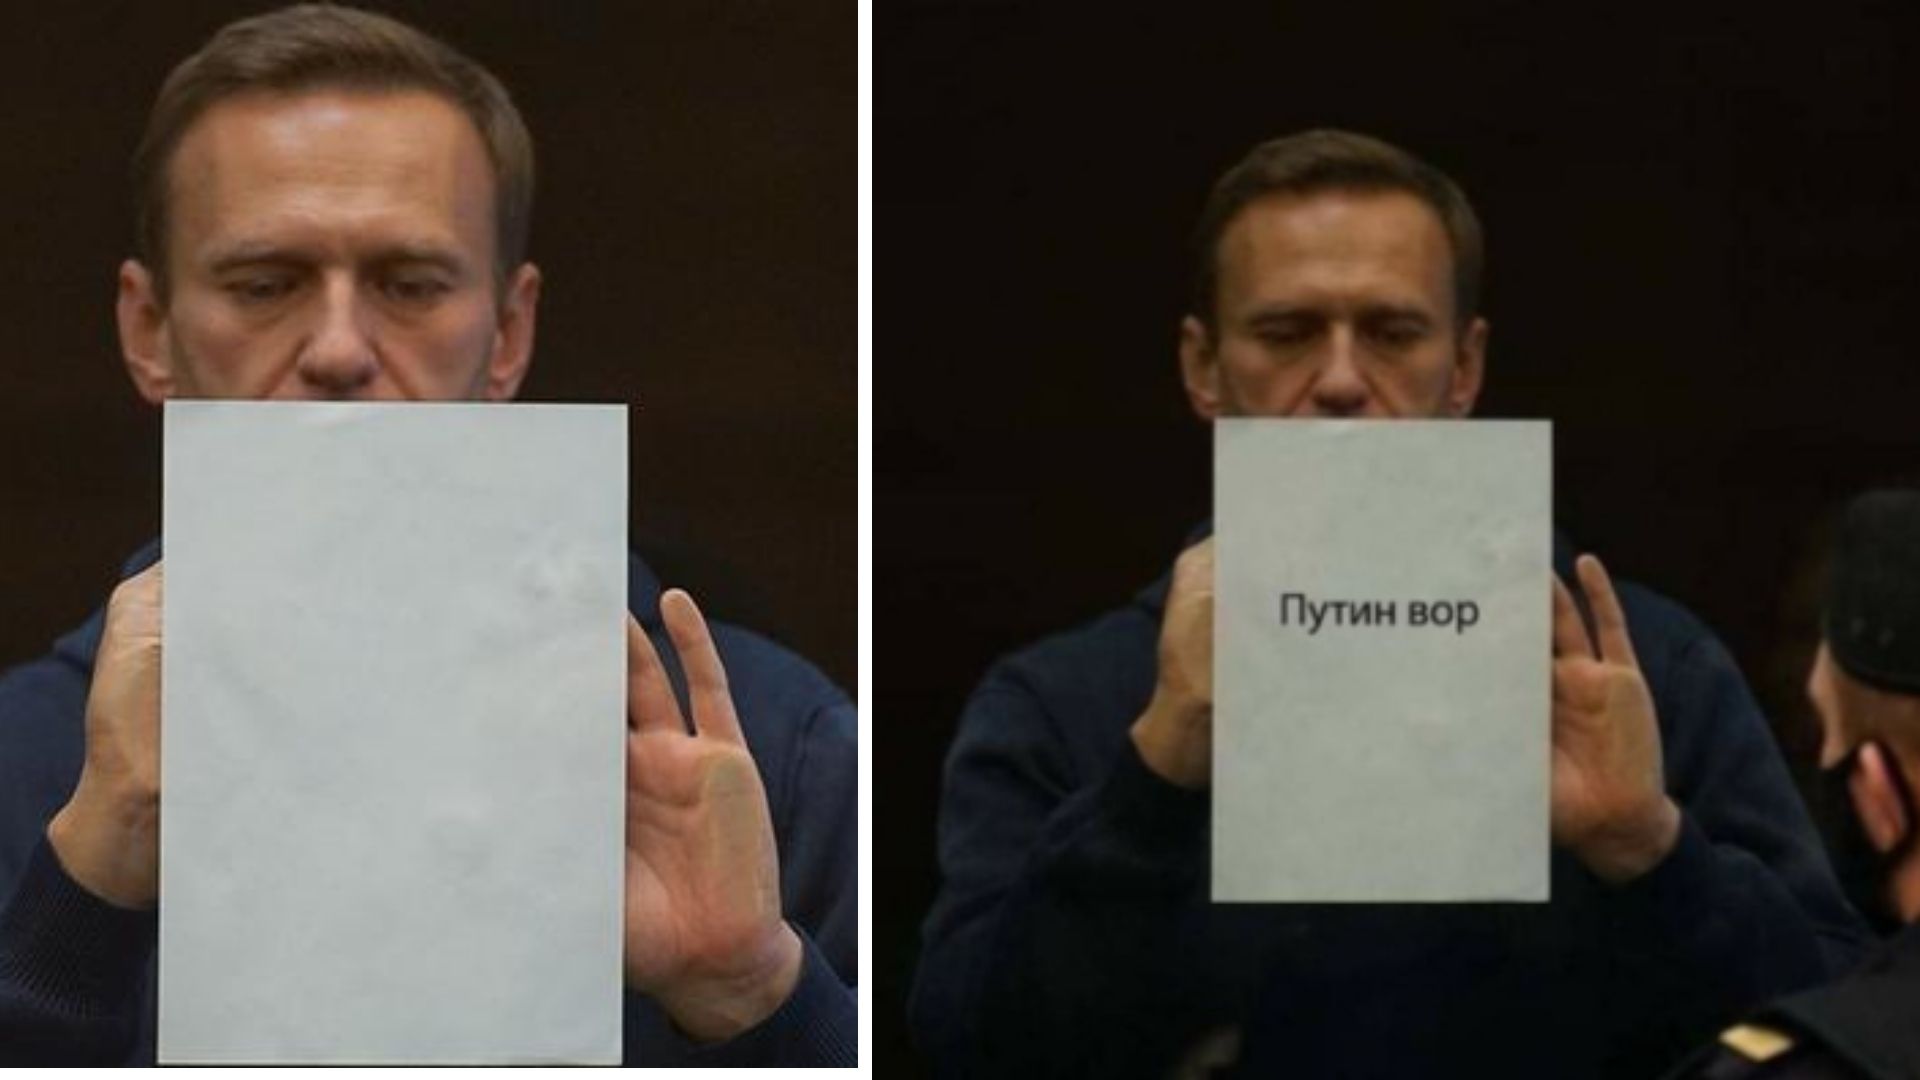 Aleksey Navalnının məhkəmədə “Putin oğrudur” yazılı plakat qaldırdığı iddiası